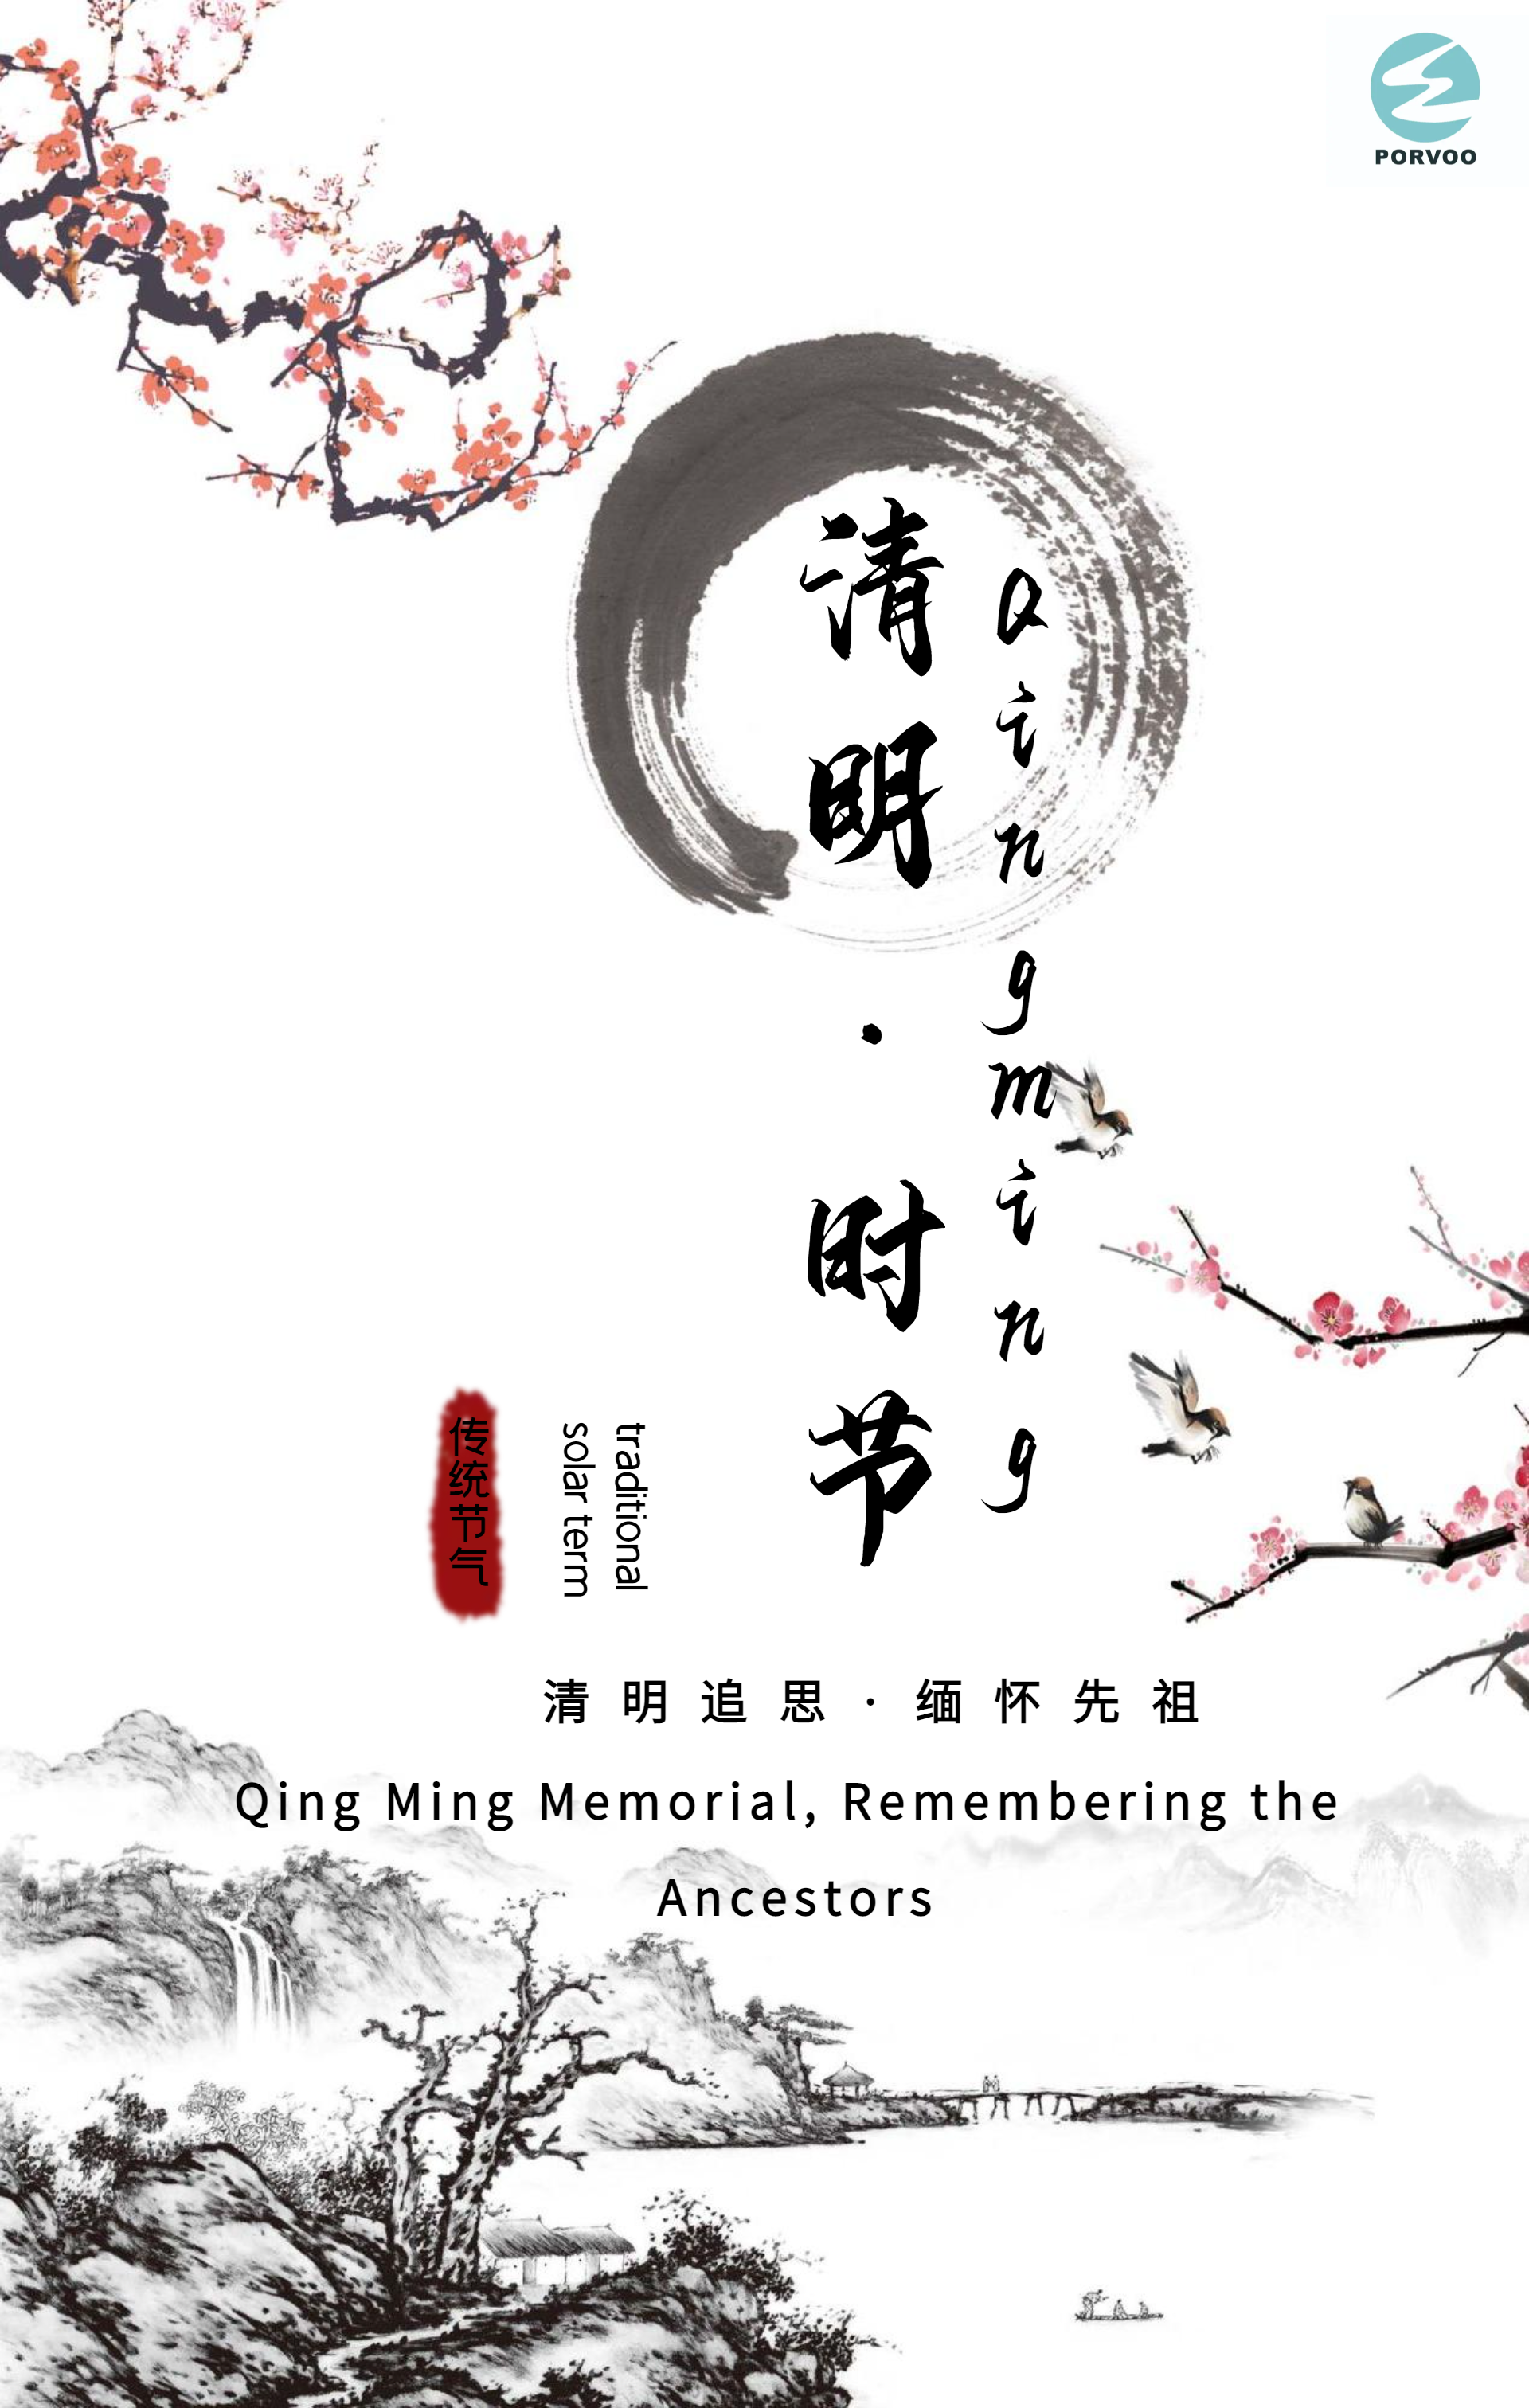 Qing Ming Memorial